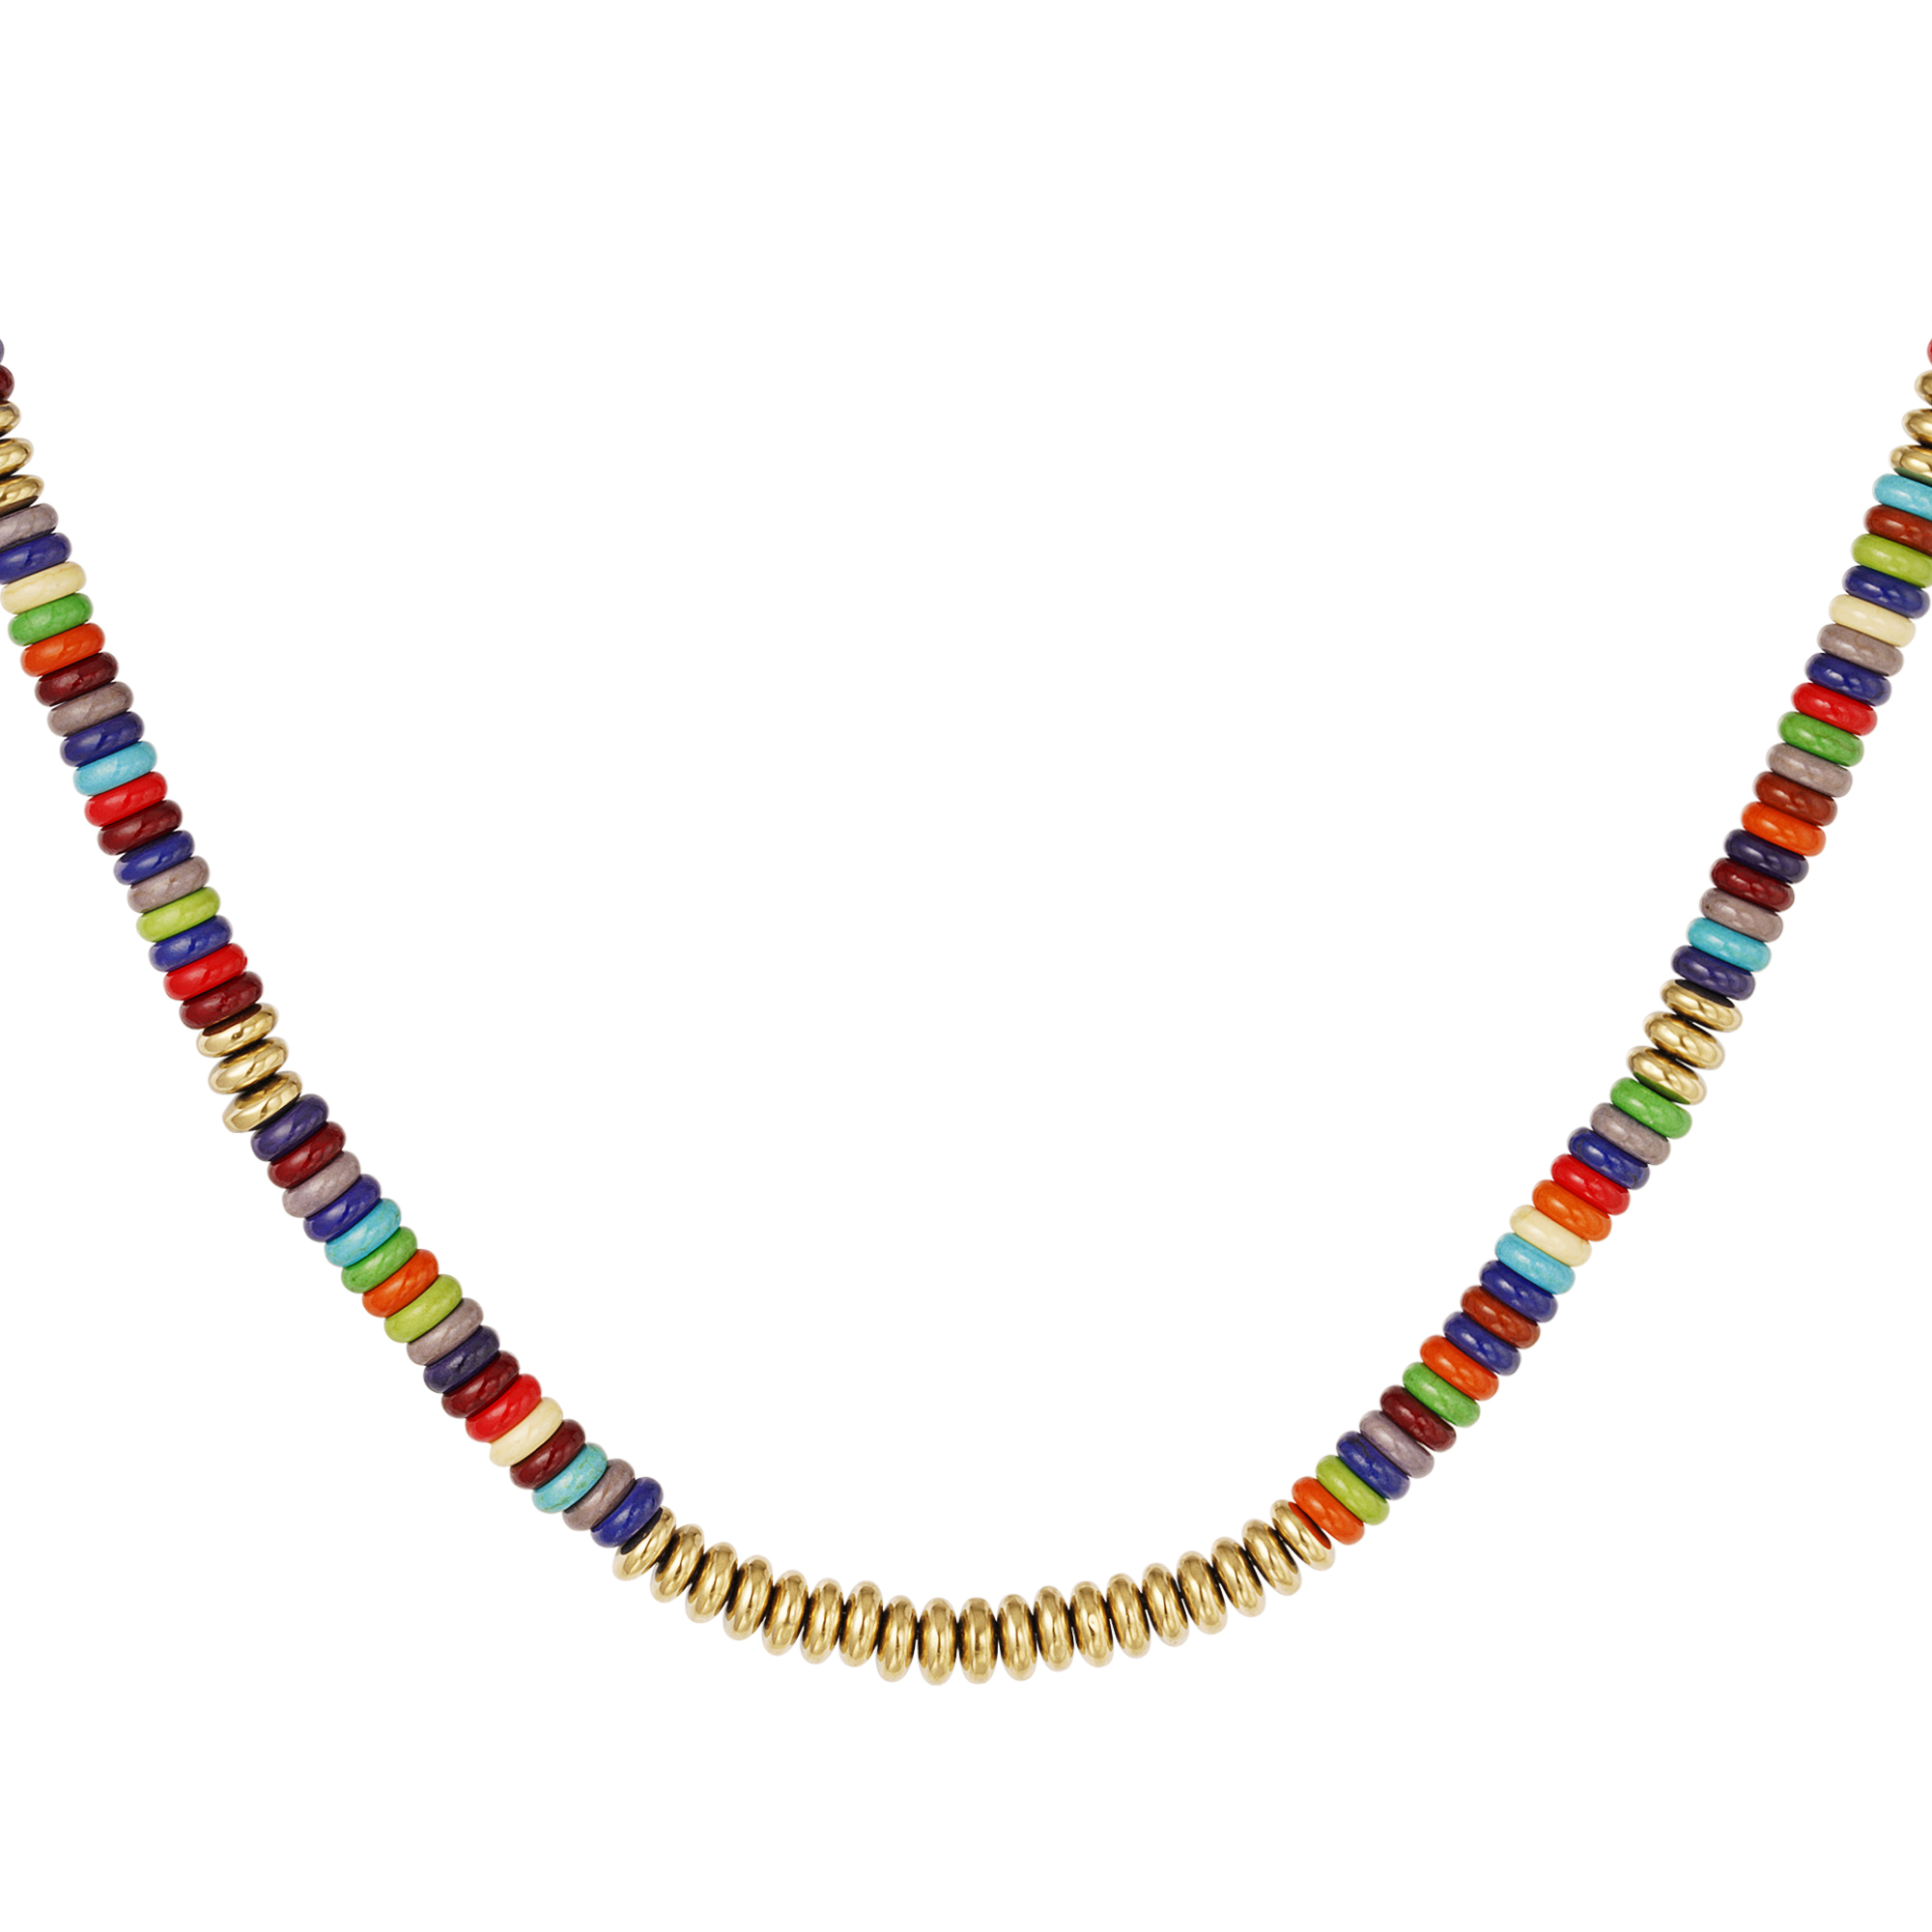 Halskette mit flachen perlen - mehrfarbig